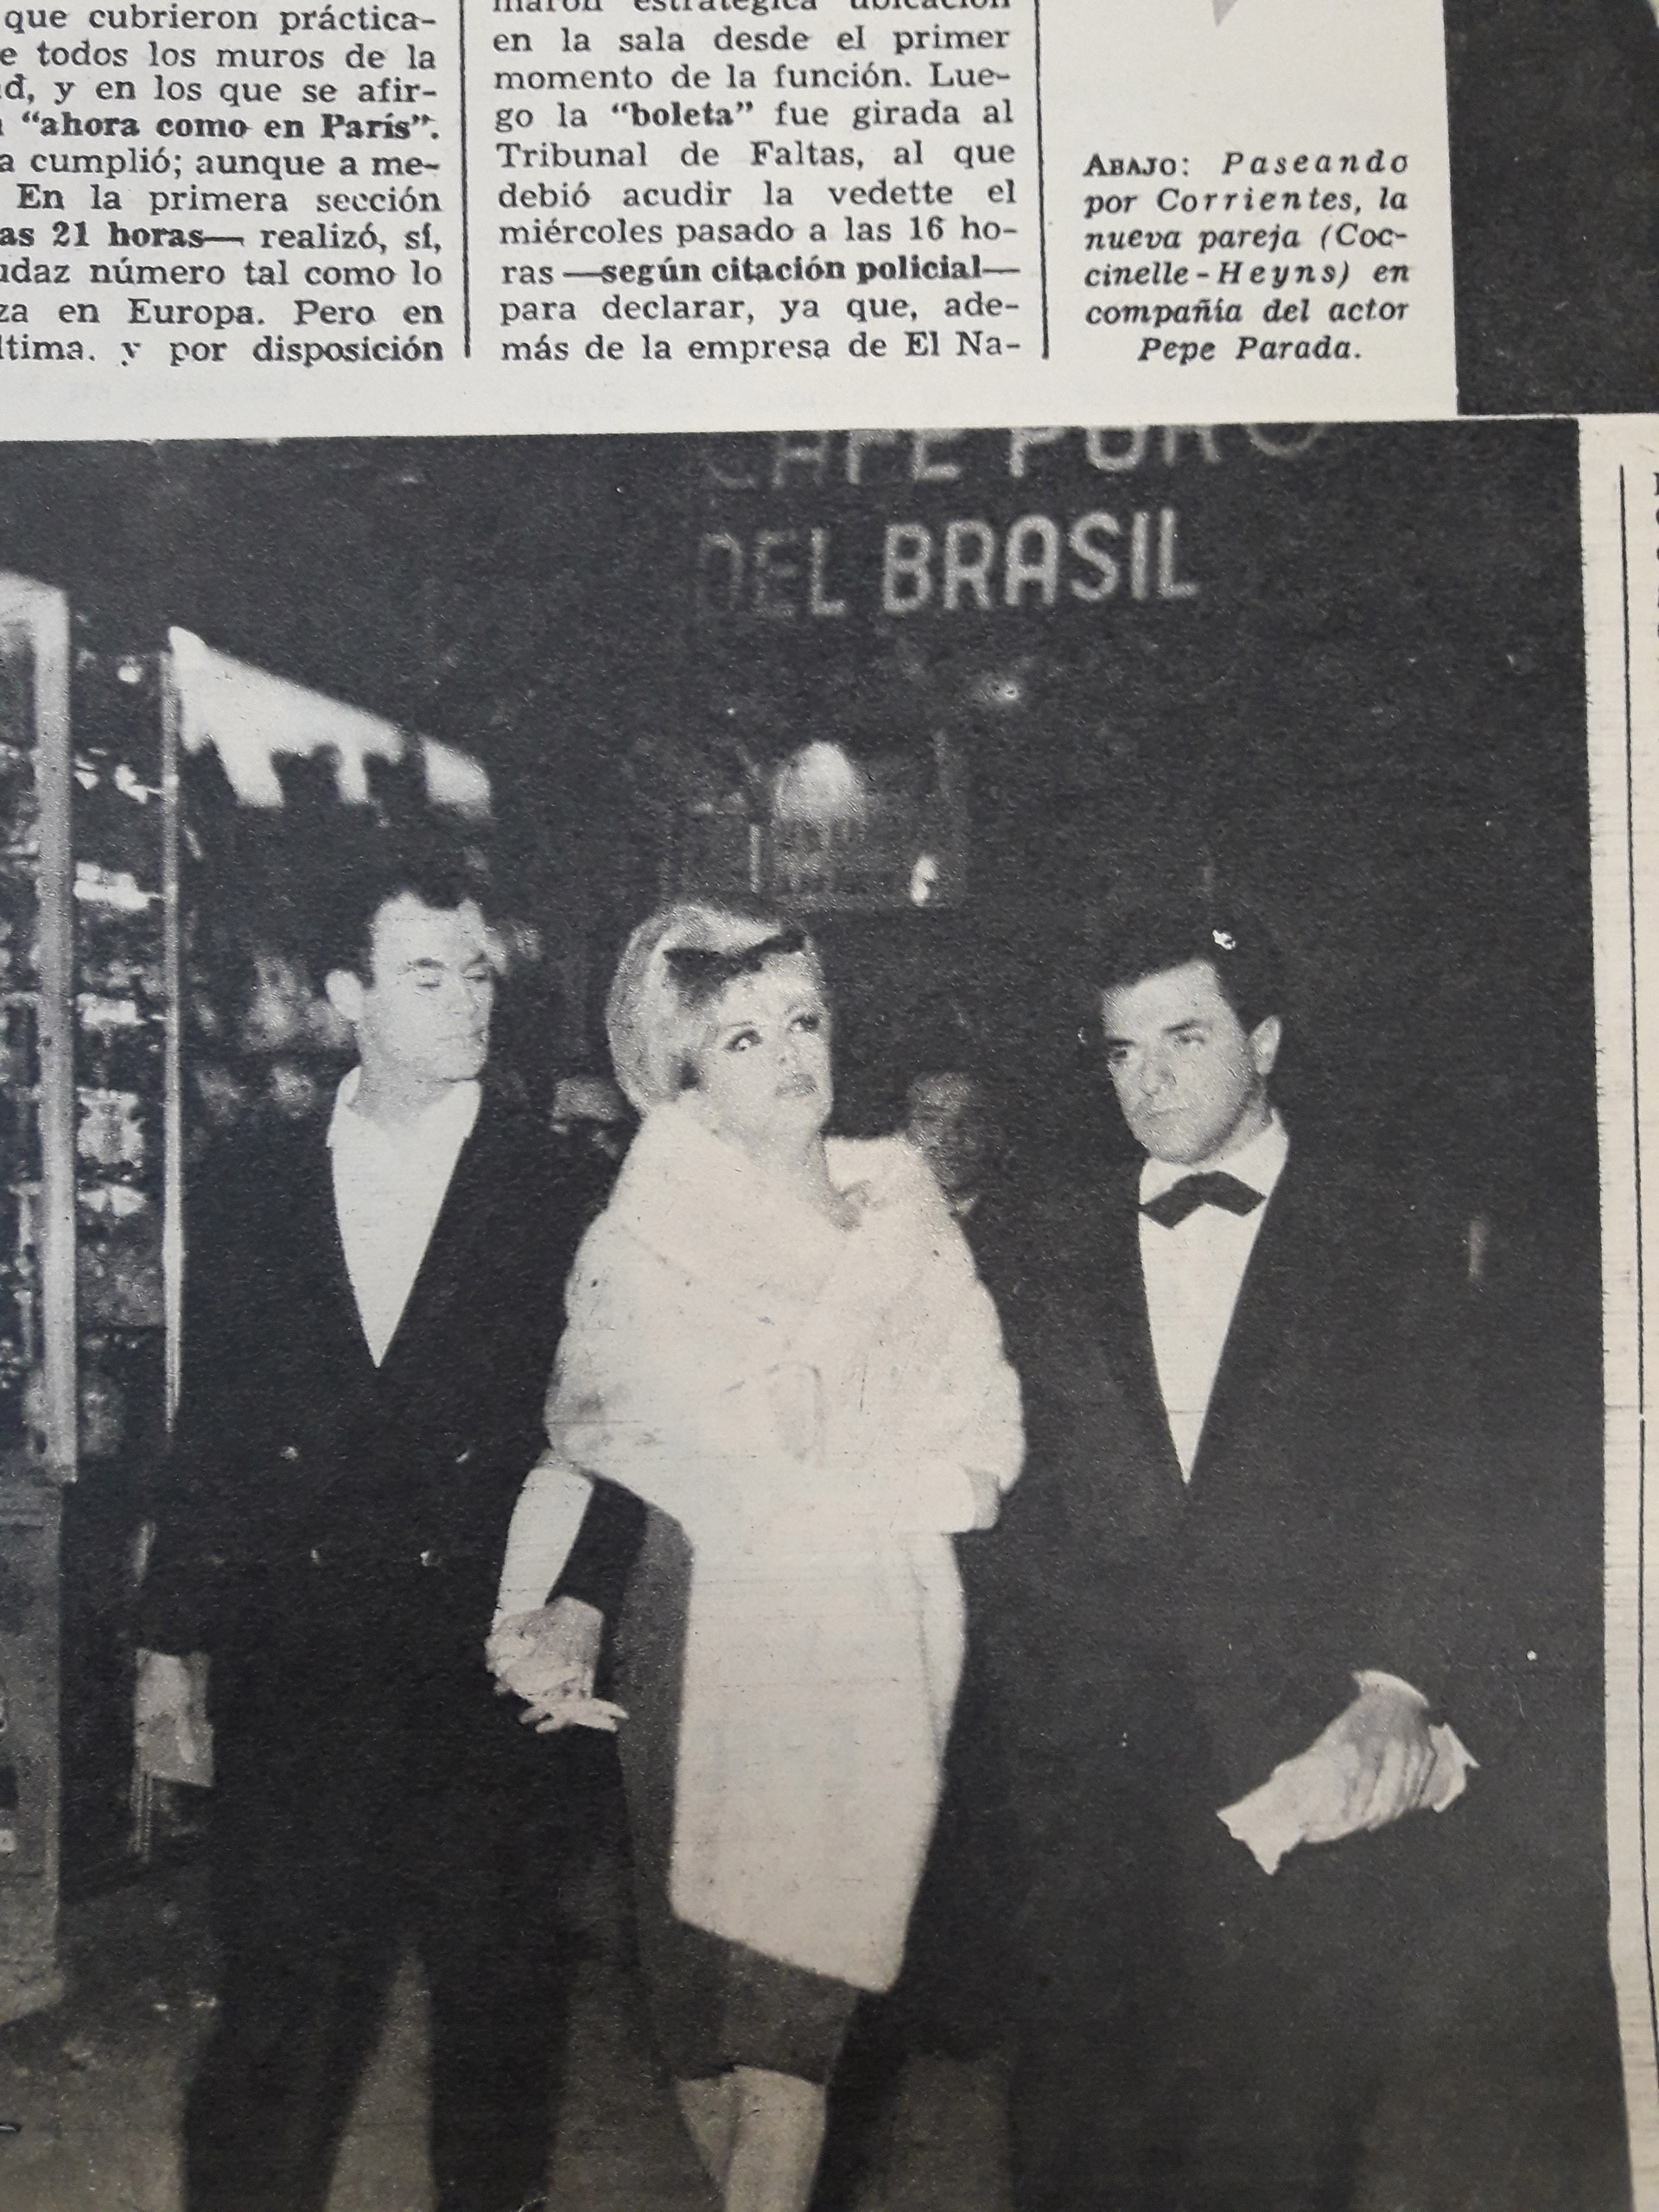 Coccinelle junto al empresario teatral Pepe Parada, durante su estancia en Argentina (Imagen: Revista Así)